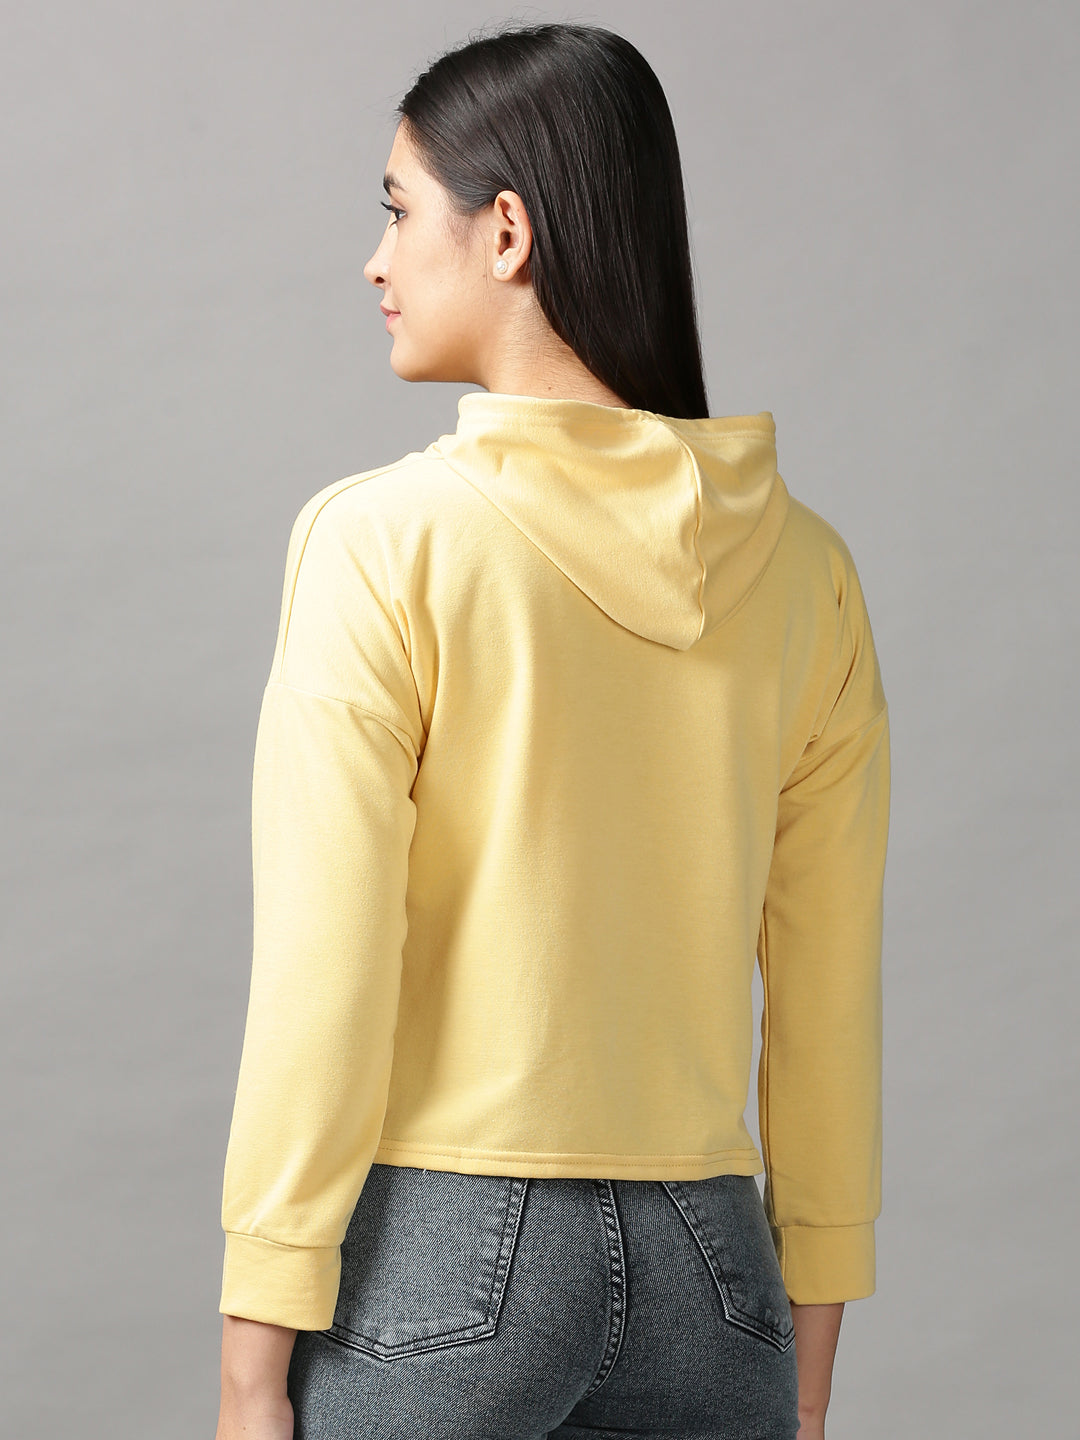 Women's Yellow Solid Crop Top